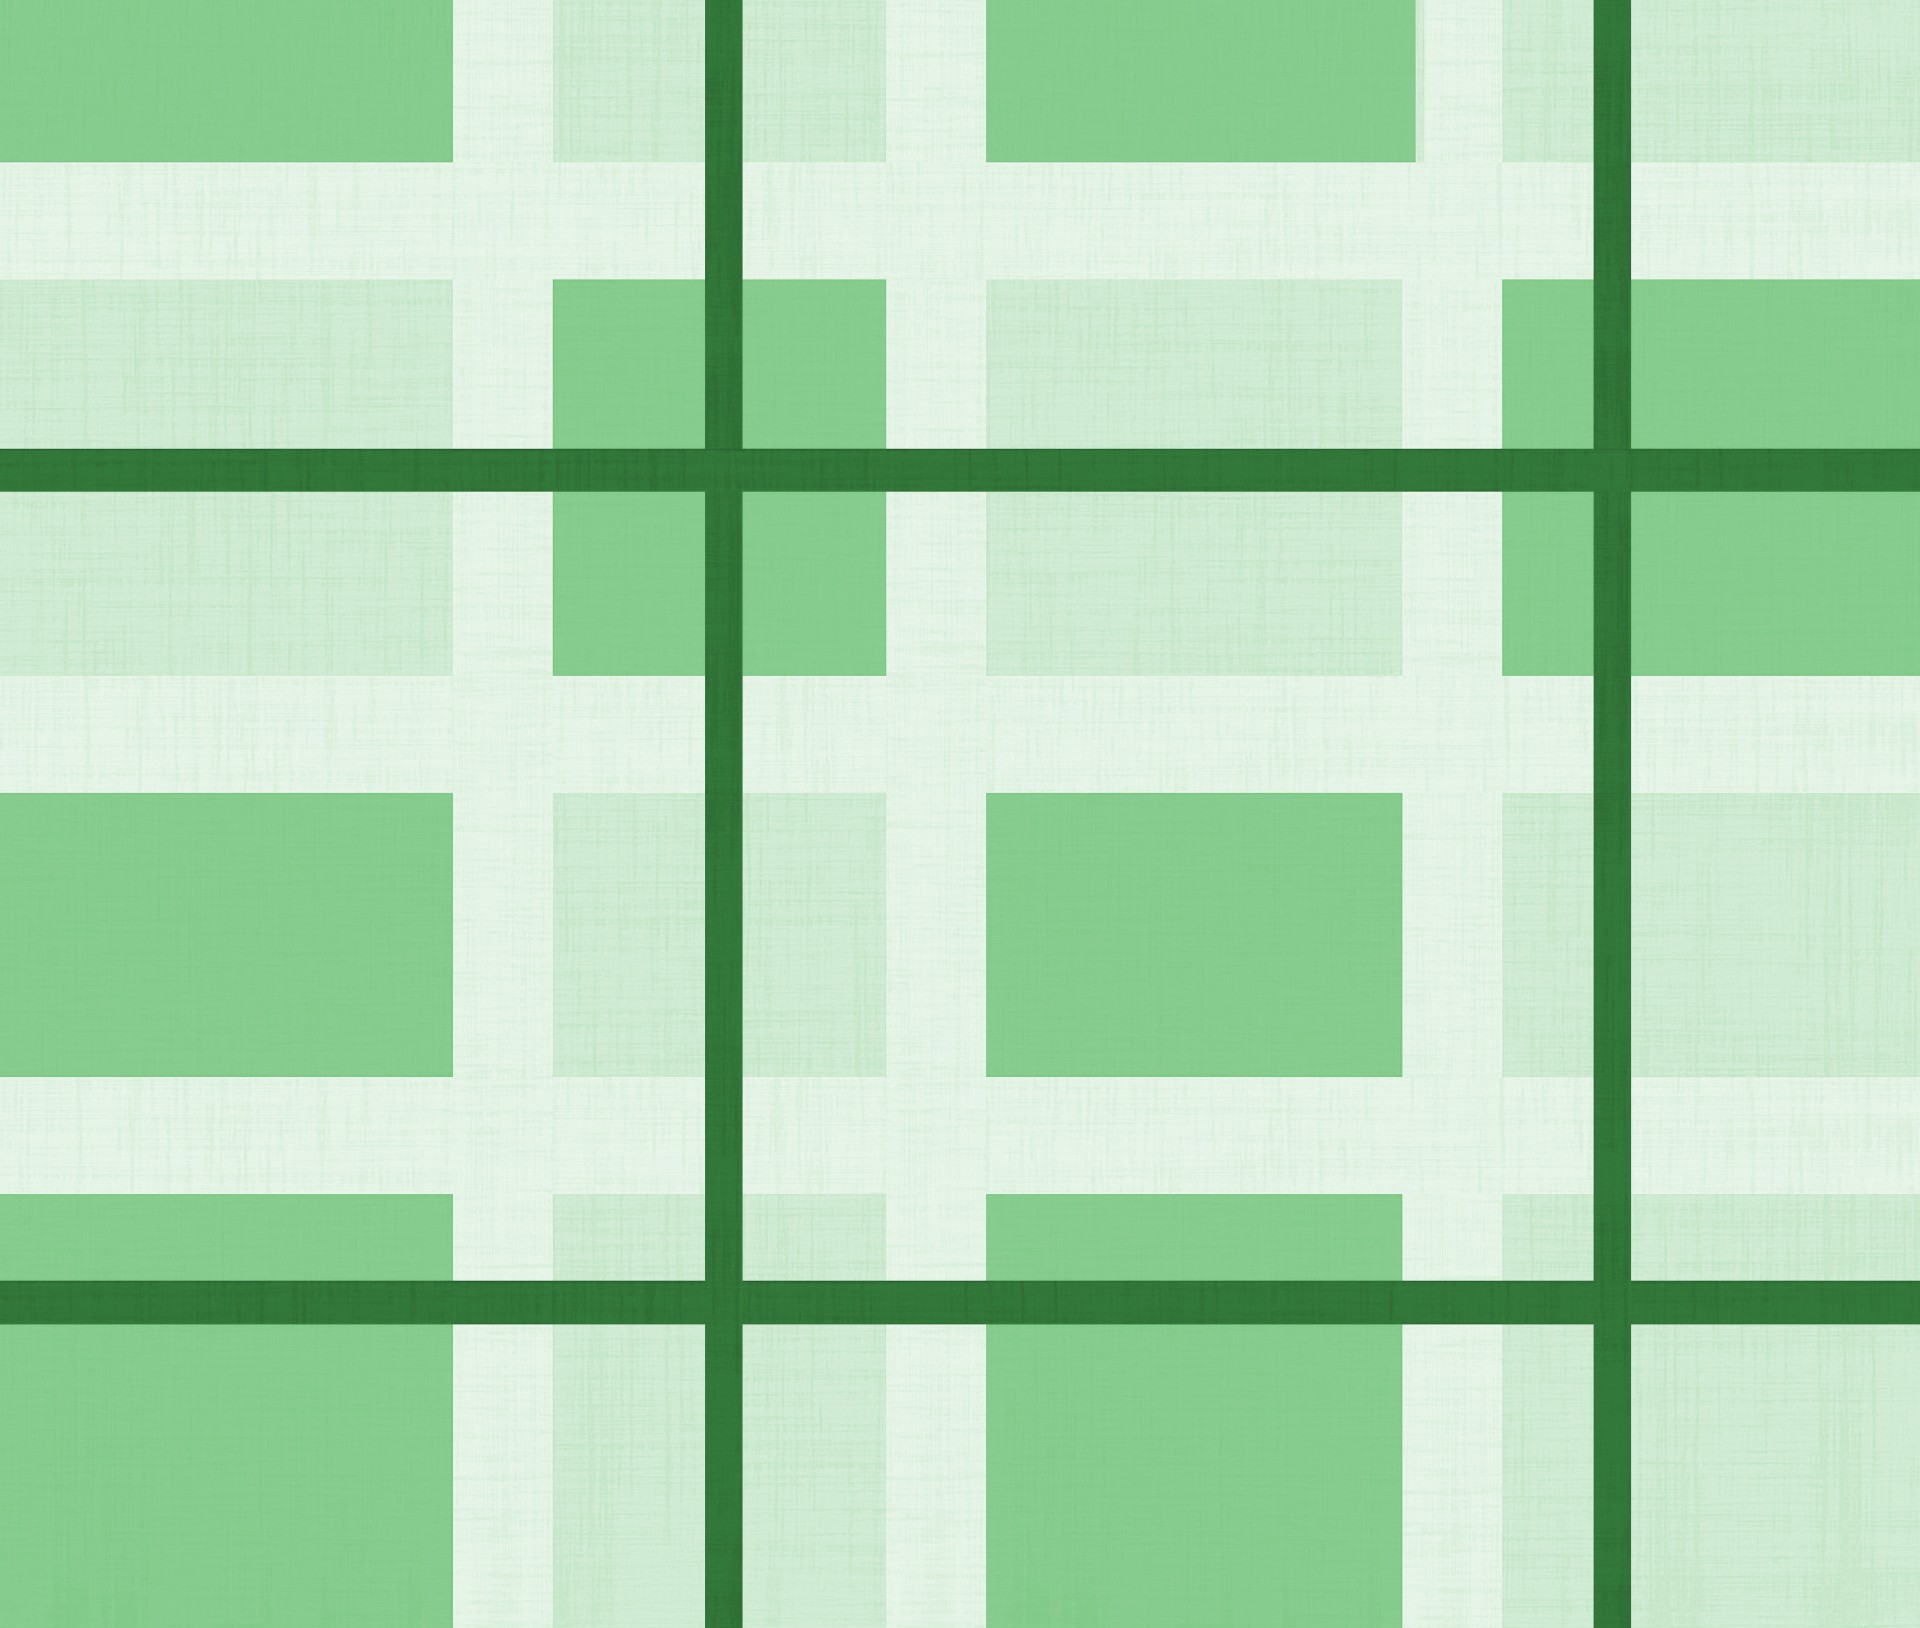 Abstract Quadrados verdes Background